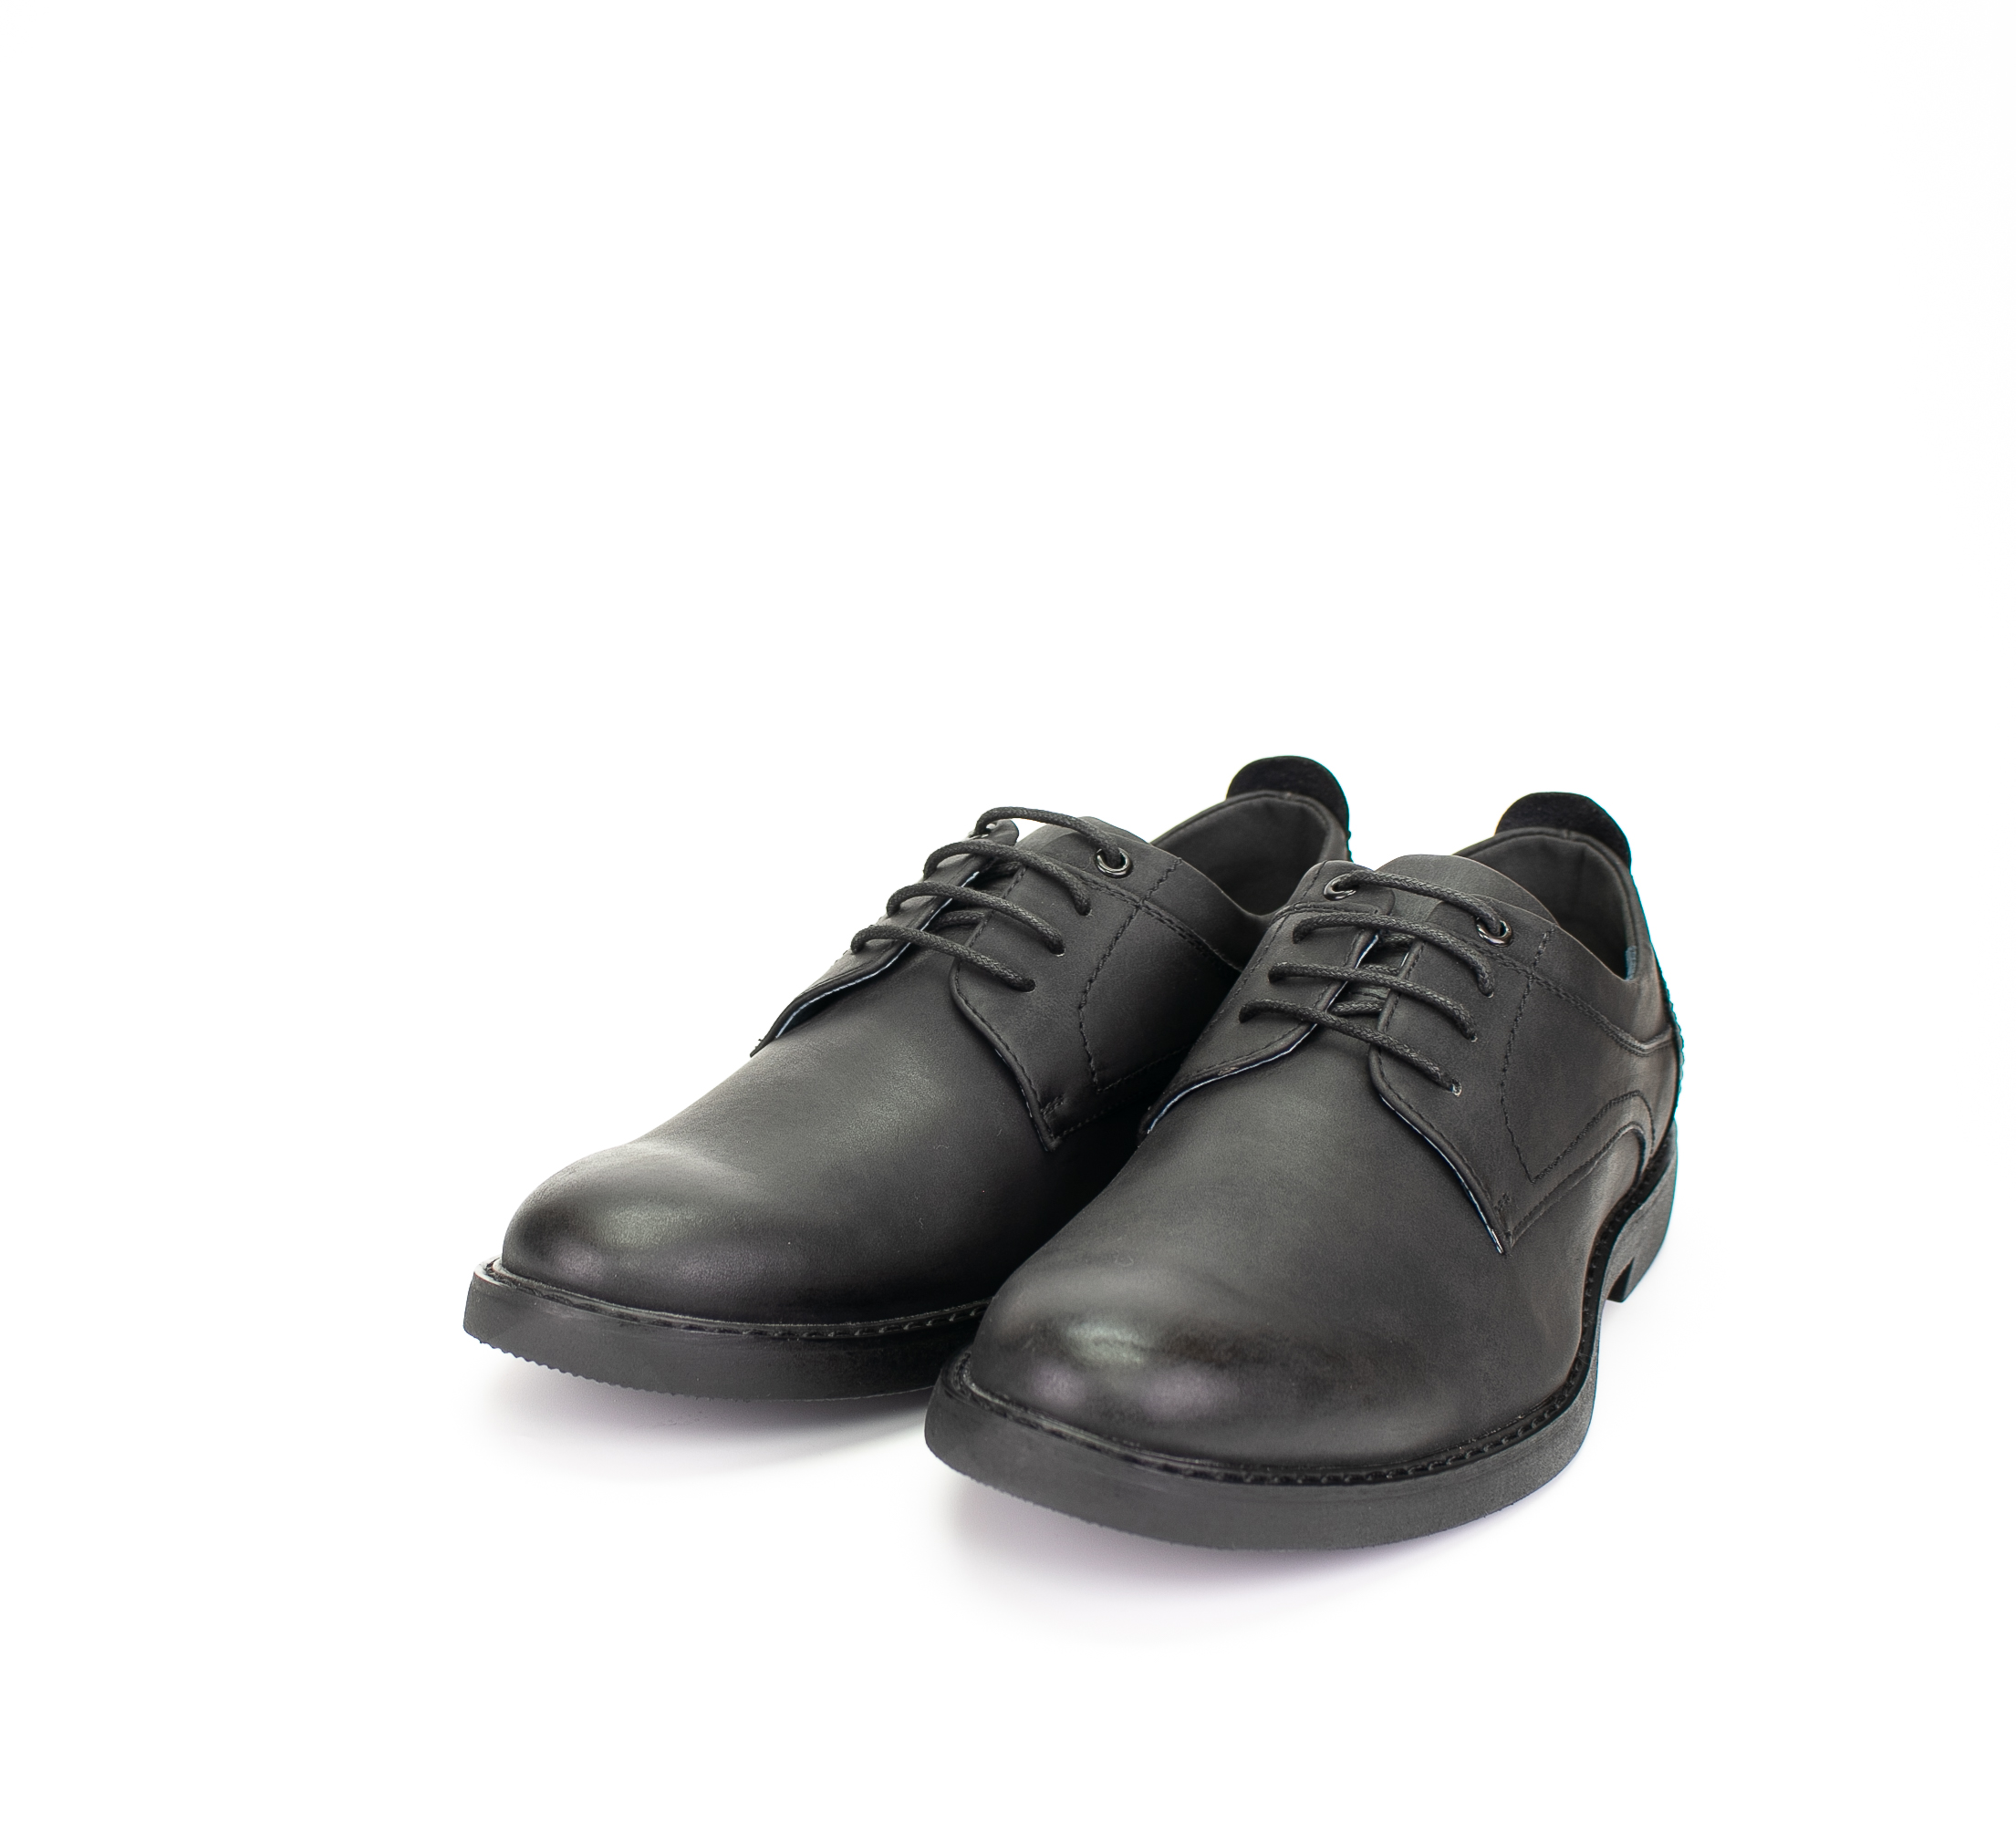 נעלי גברים אלגנט SHOFC681157 מעור  בצבע שחור , נעליים אלגנטיות ספרטיבי לגבר , באיכות טובה ביותר , טובות לנעילה יום יומי ,שוליה רכה ונוכה עם מדרס מיוחד של שולץ 